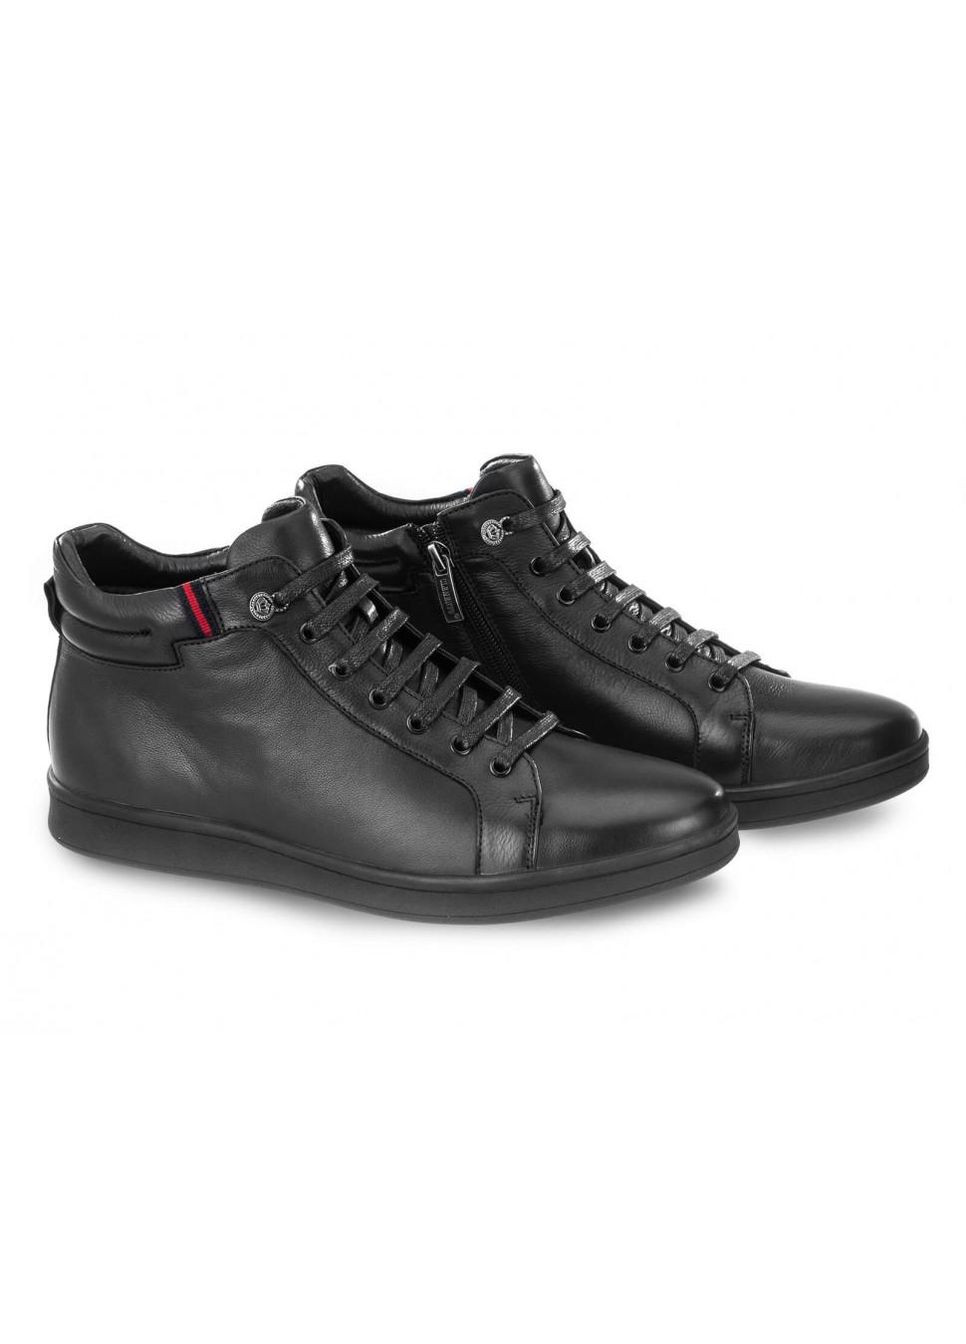 Черные зимние ботинки 7194314-б цвет черный Clemento